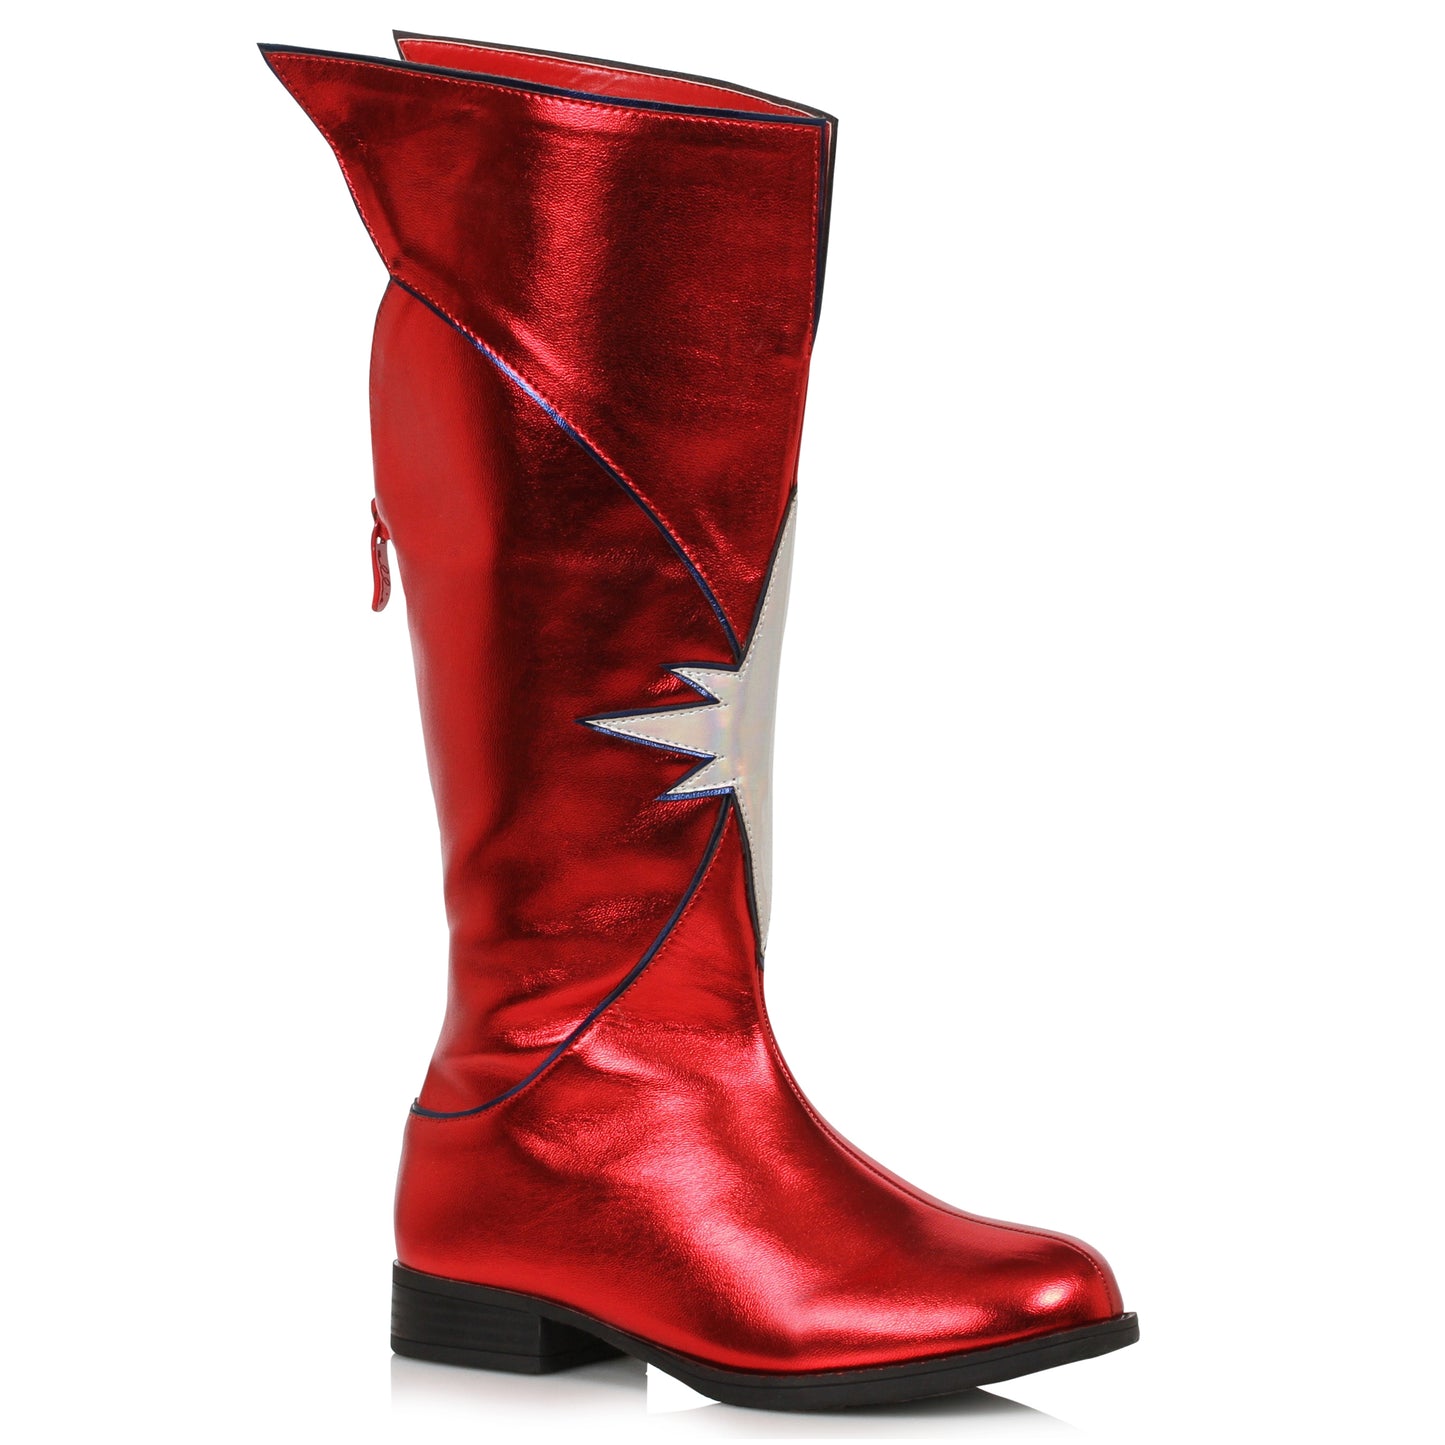 151-KARMA 1.5" Women's Knee High Superhero Boot